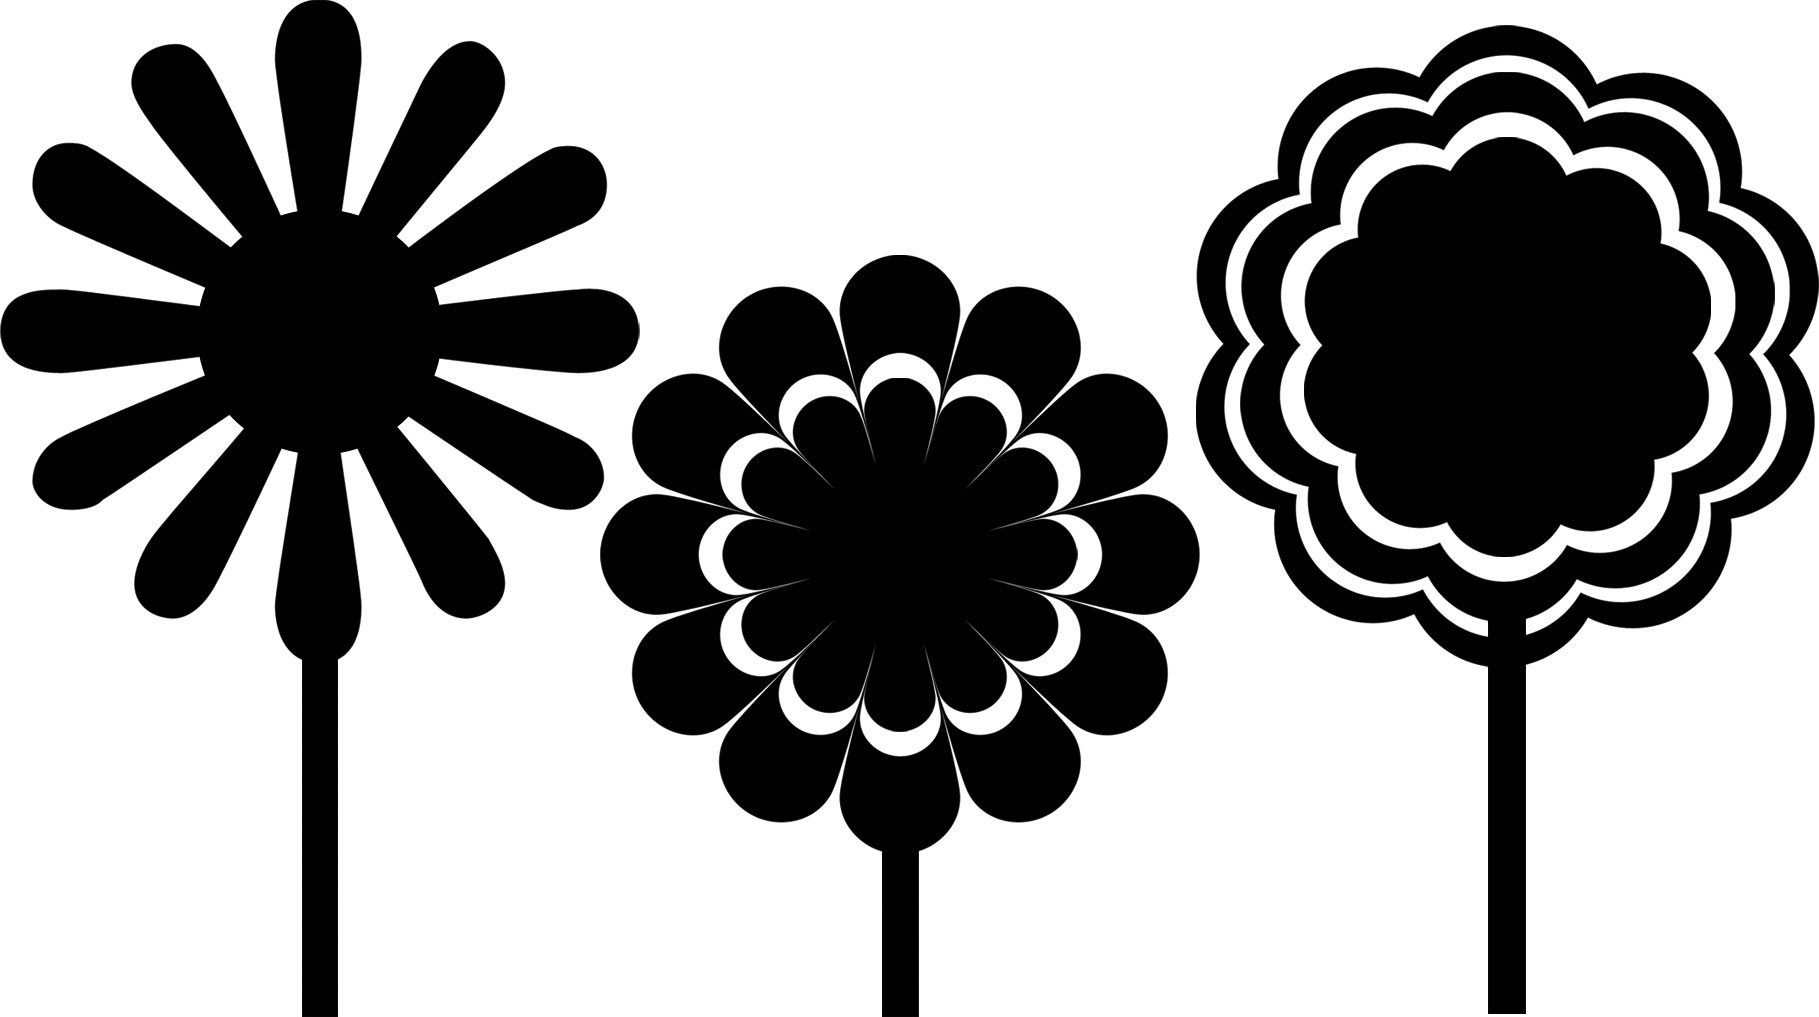 花のイラスト フリー素材 白黒 モノクロno 266 白黒 三種